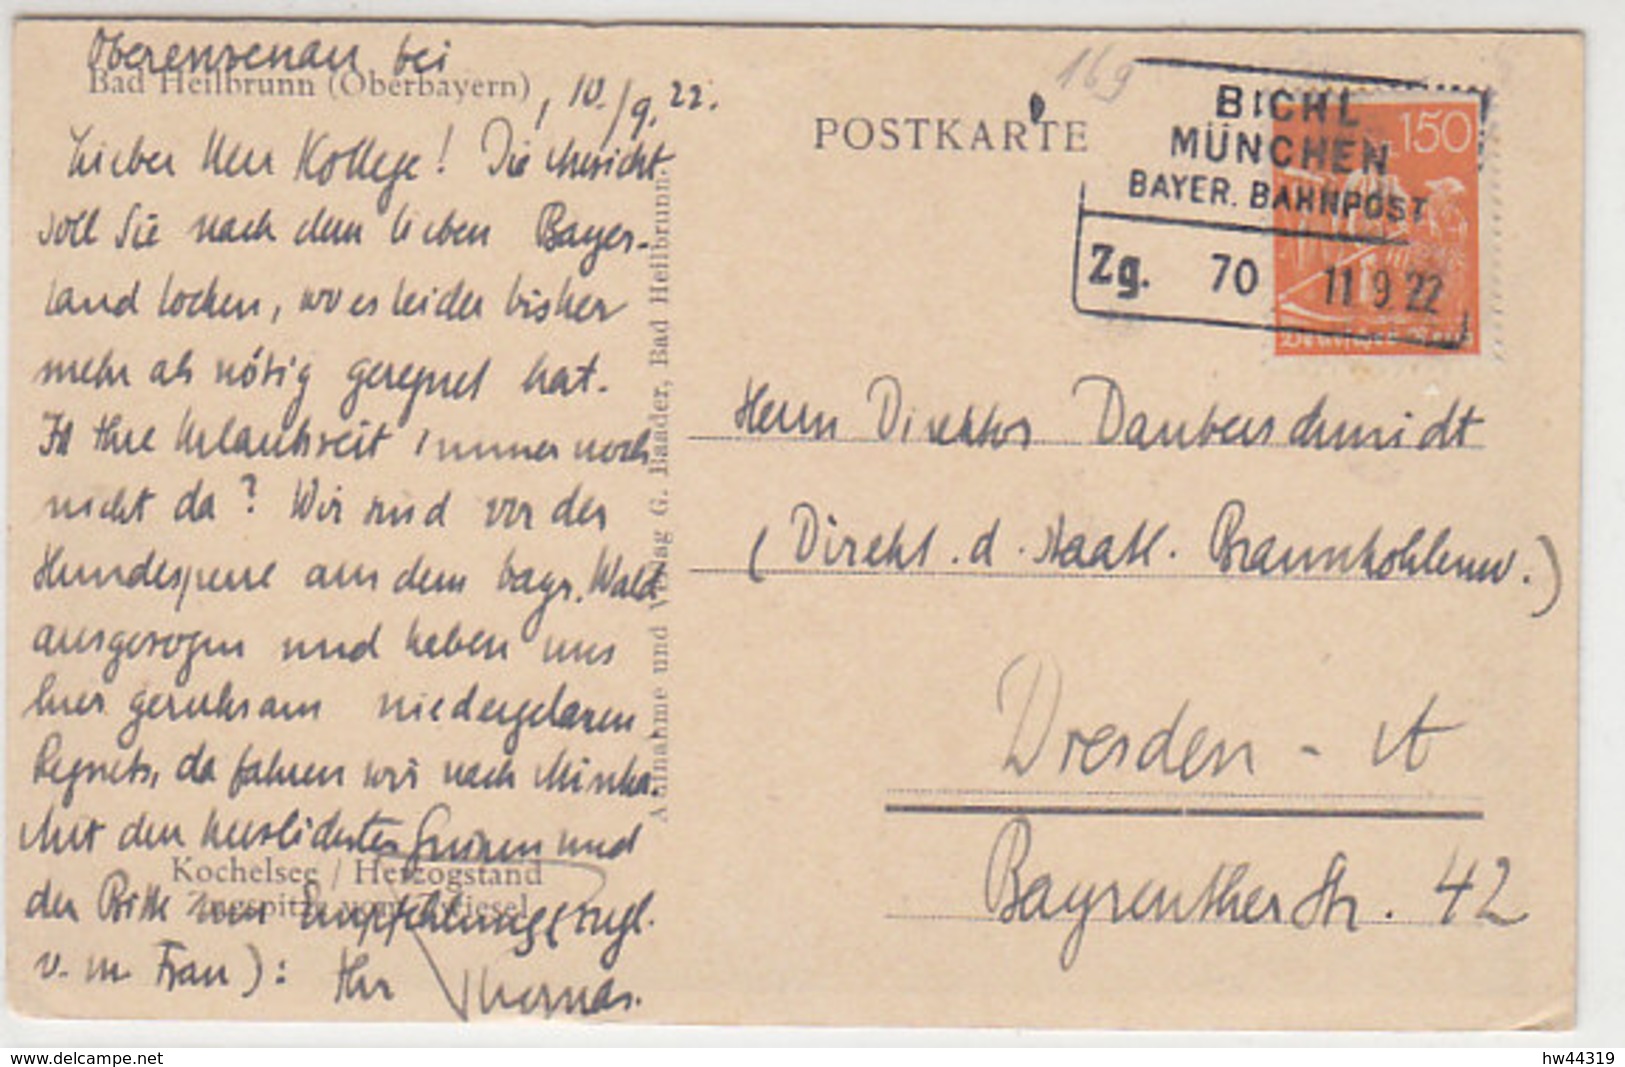 BAHNPOST Bichl München Bayer. Bahnpost Zg. 70 11.9.22 Nach Dresden - Briefe U. Dokumente